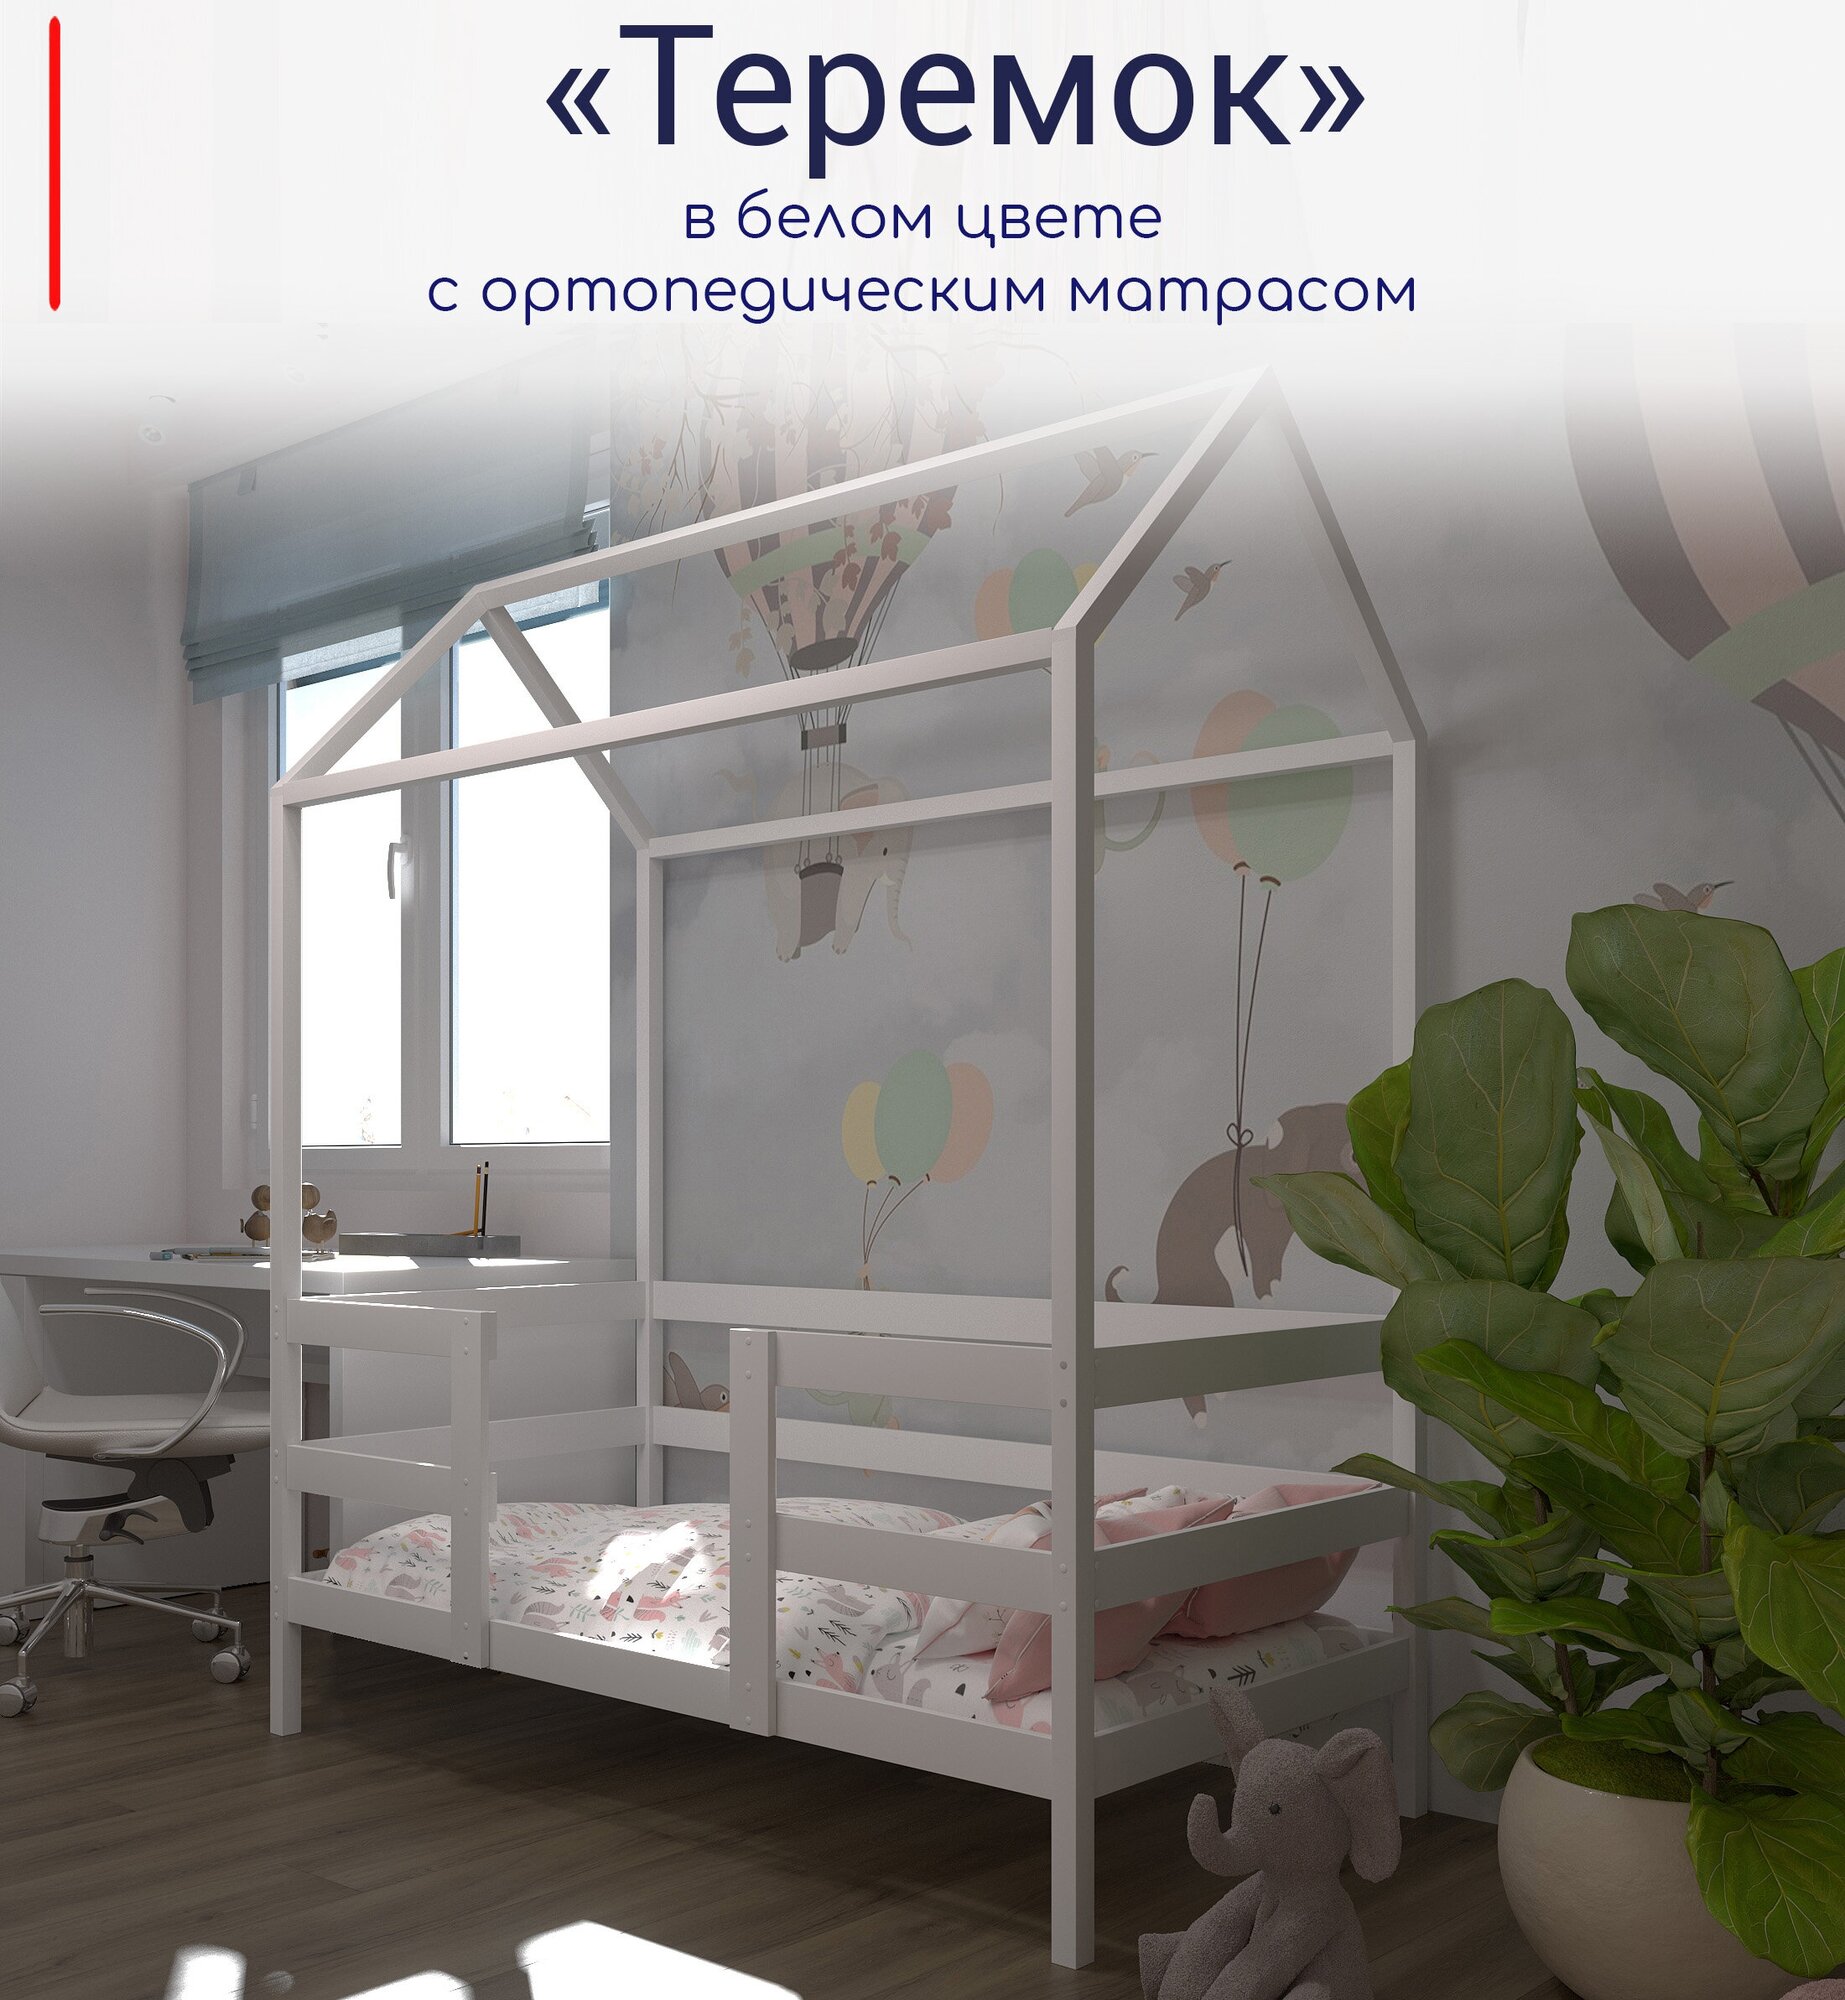 Кровать детская, подростковая "Теремок", 180х90, в комплекте с ортопедическим матрасом, белая, из массива